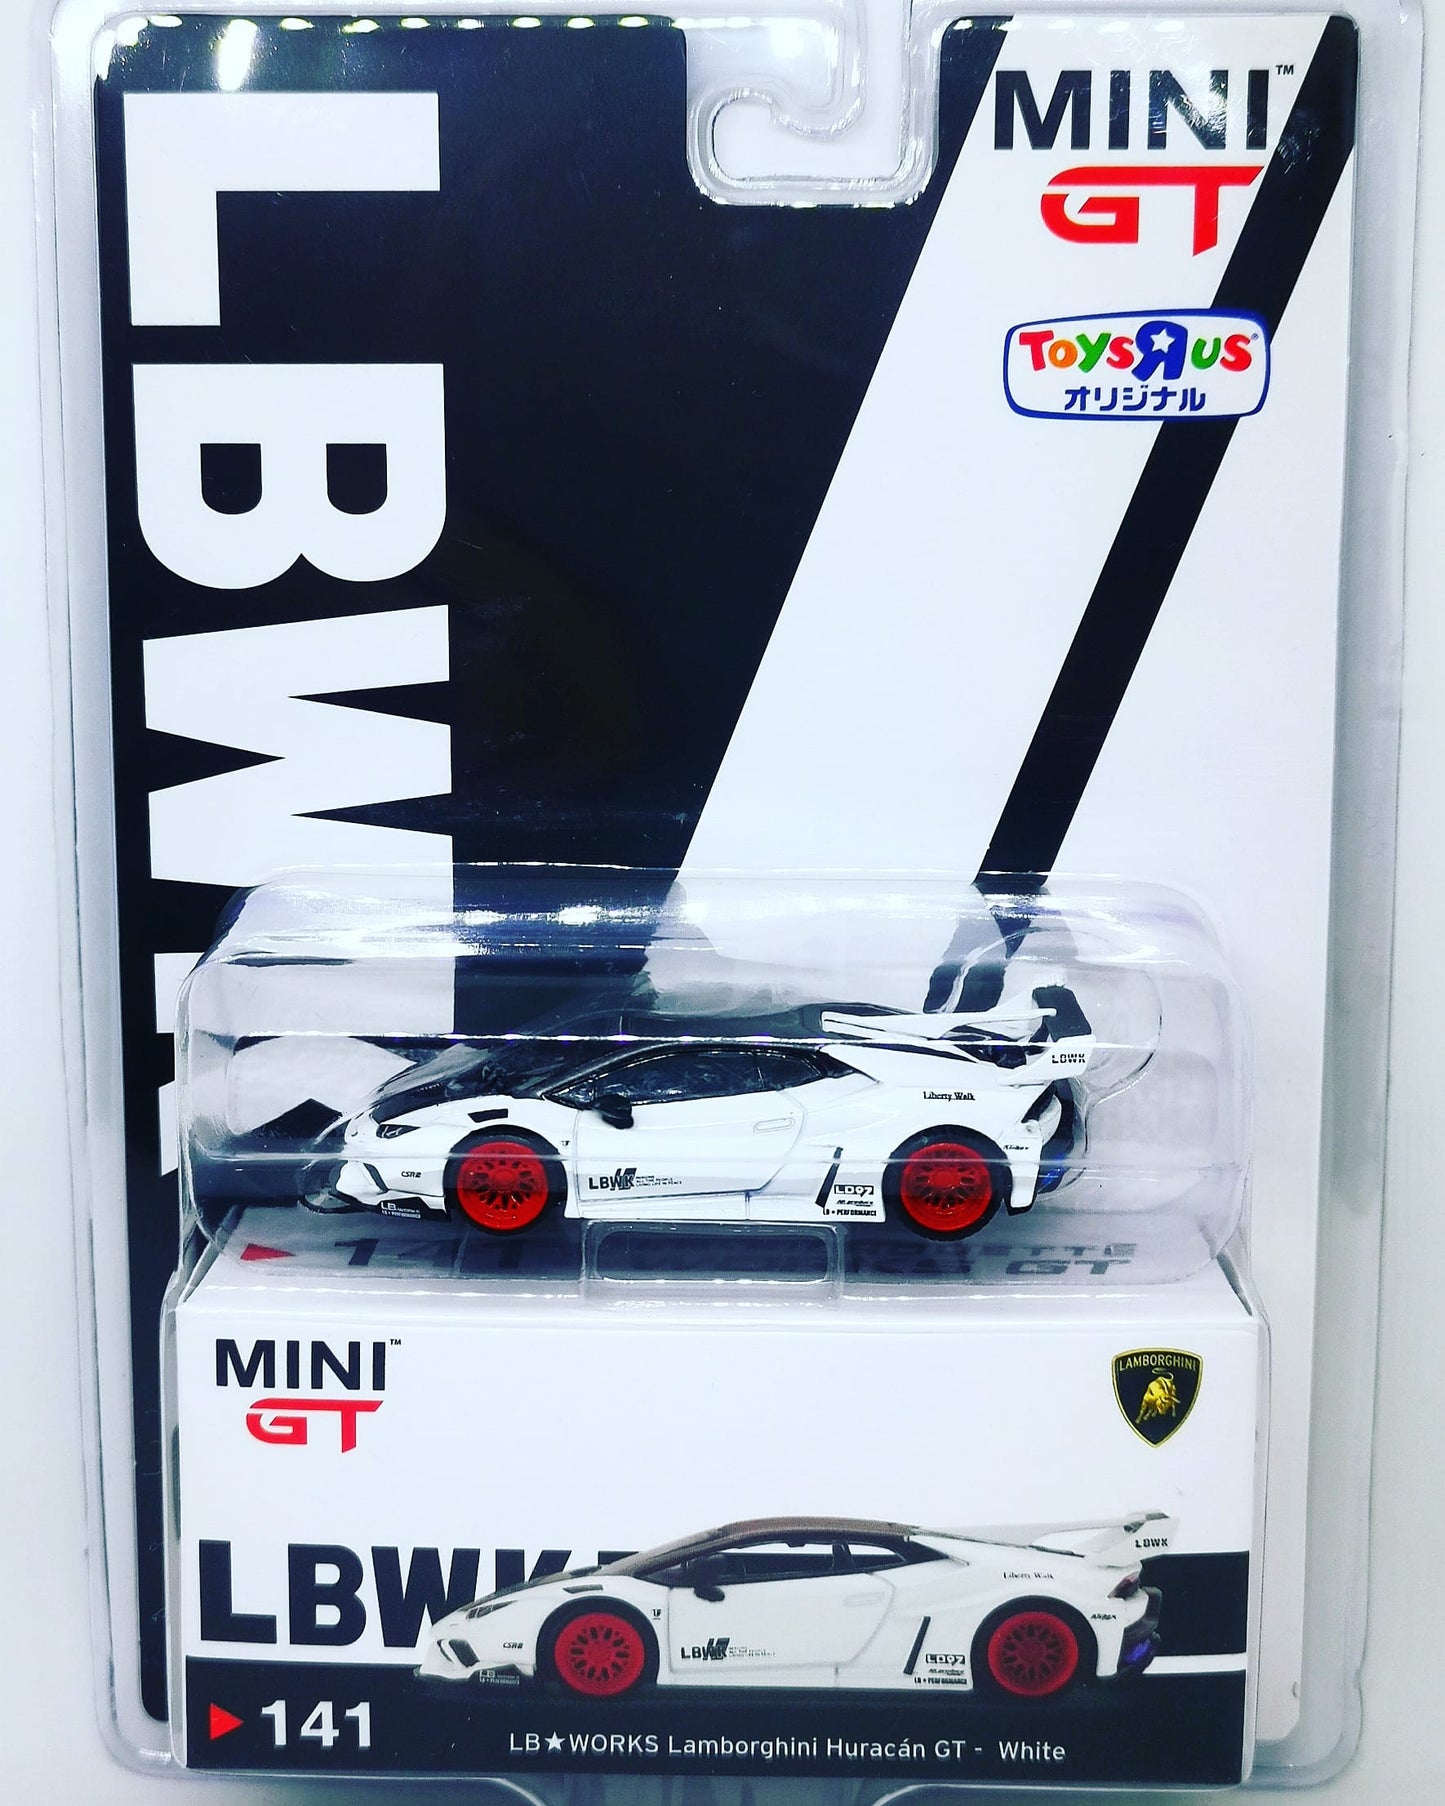 MiniGT 1/64 No.141 Japan Toys R Us exclusive LB★WORKS Lamborghini Huracán GT White